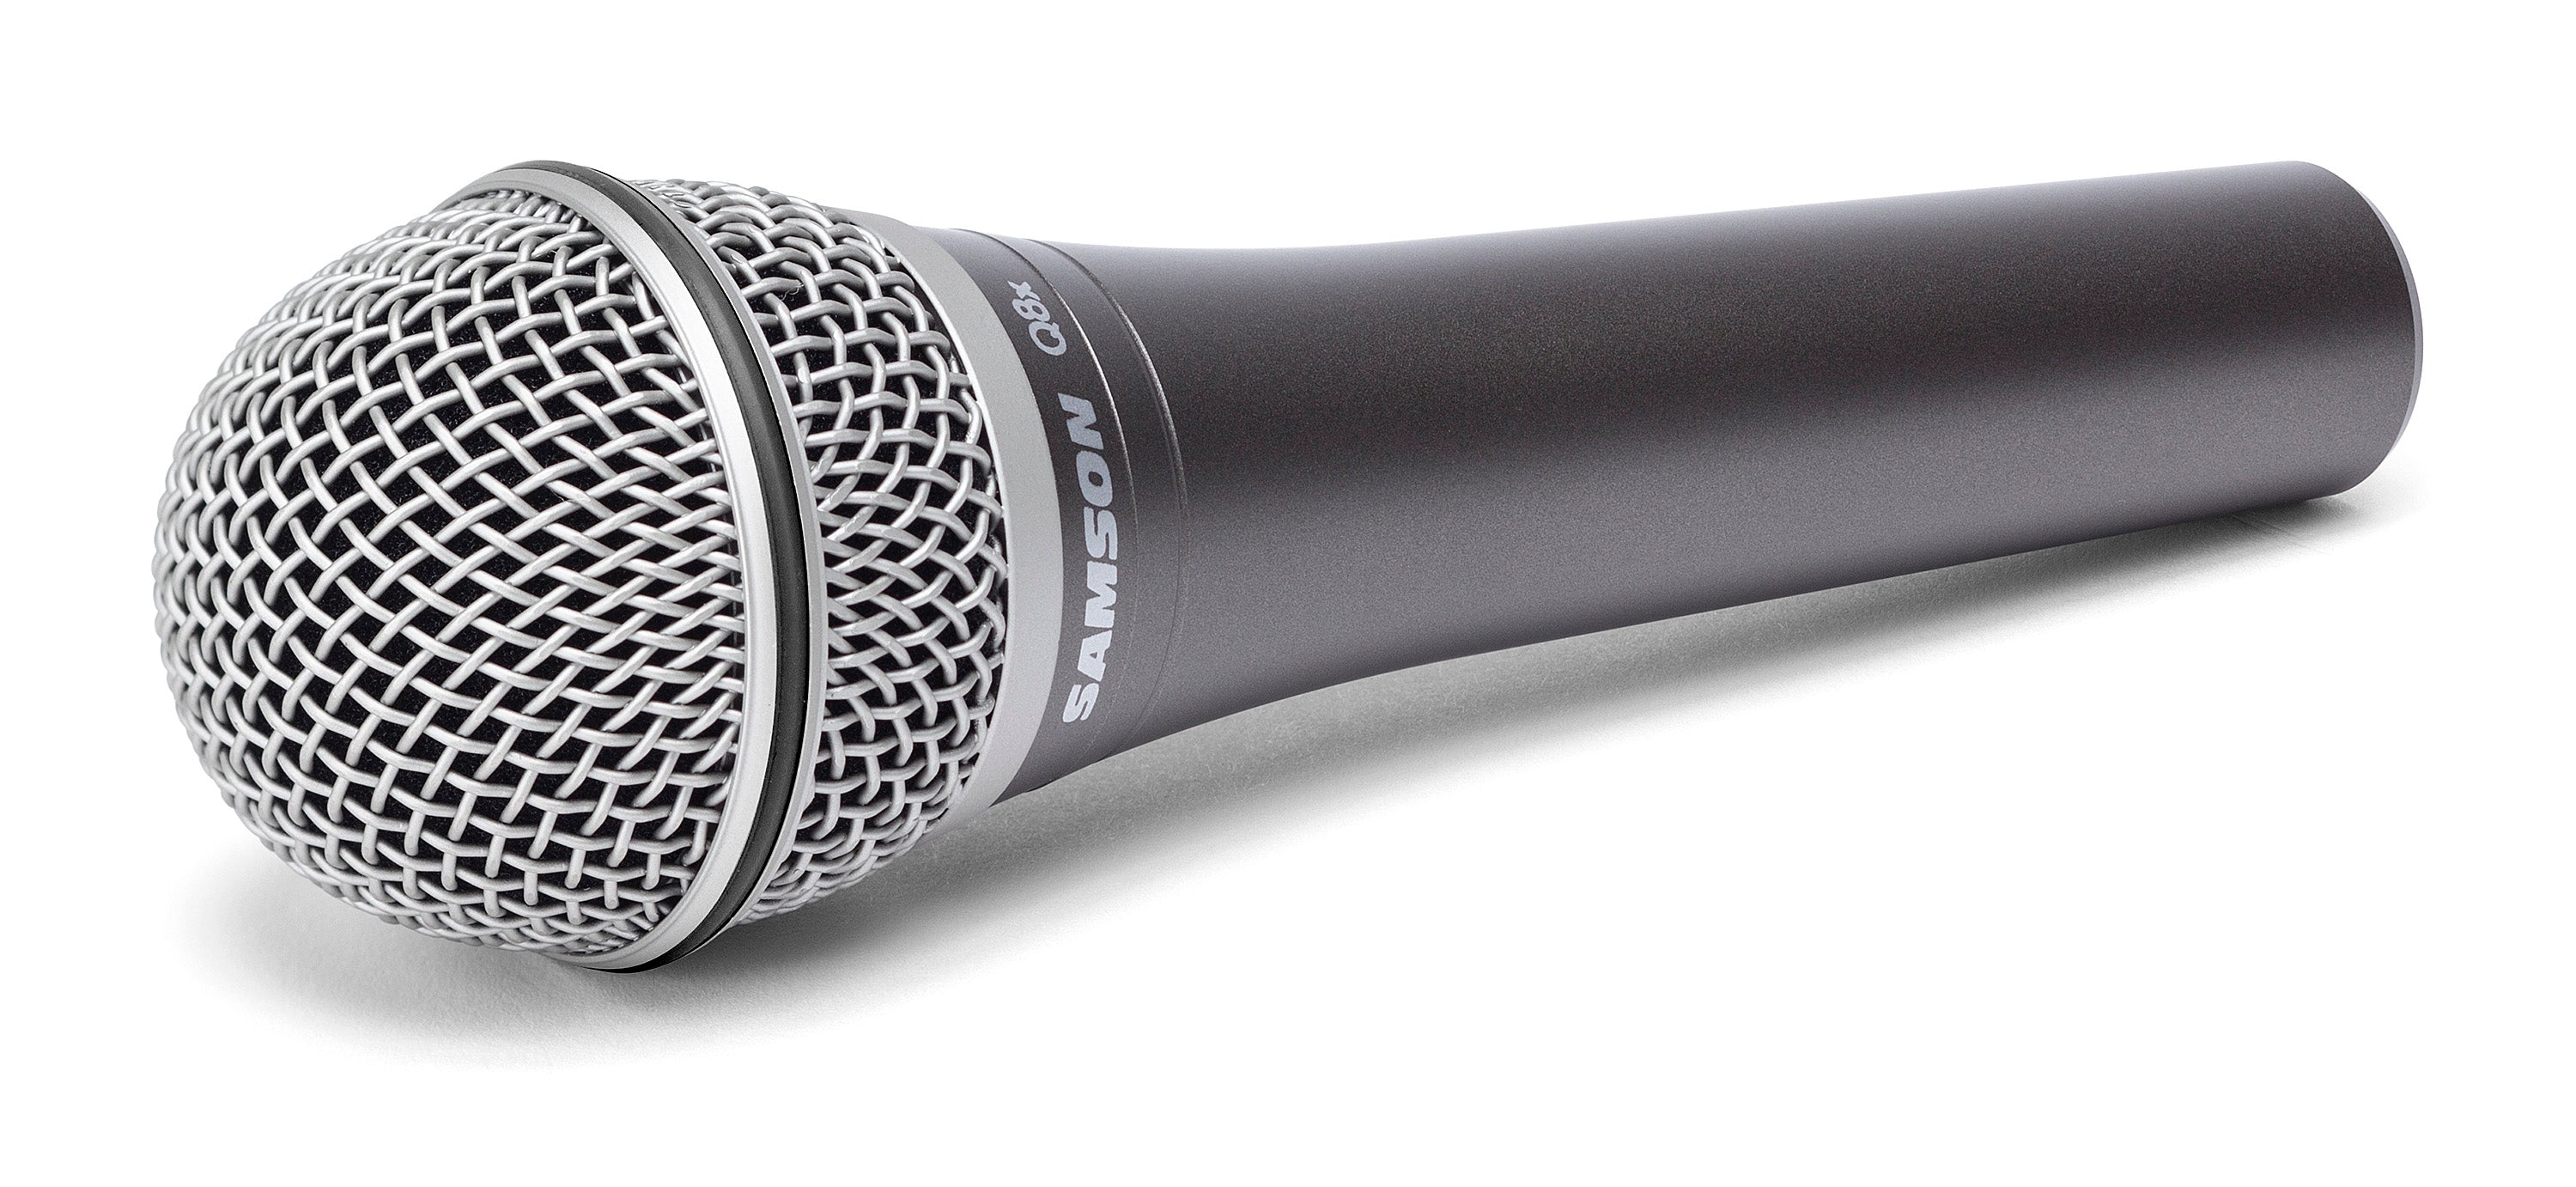 Samson Q8x Dynamic Vocal Microphone